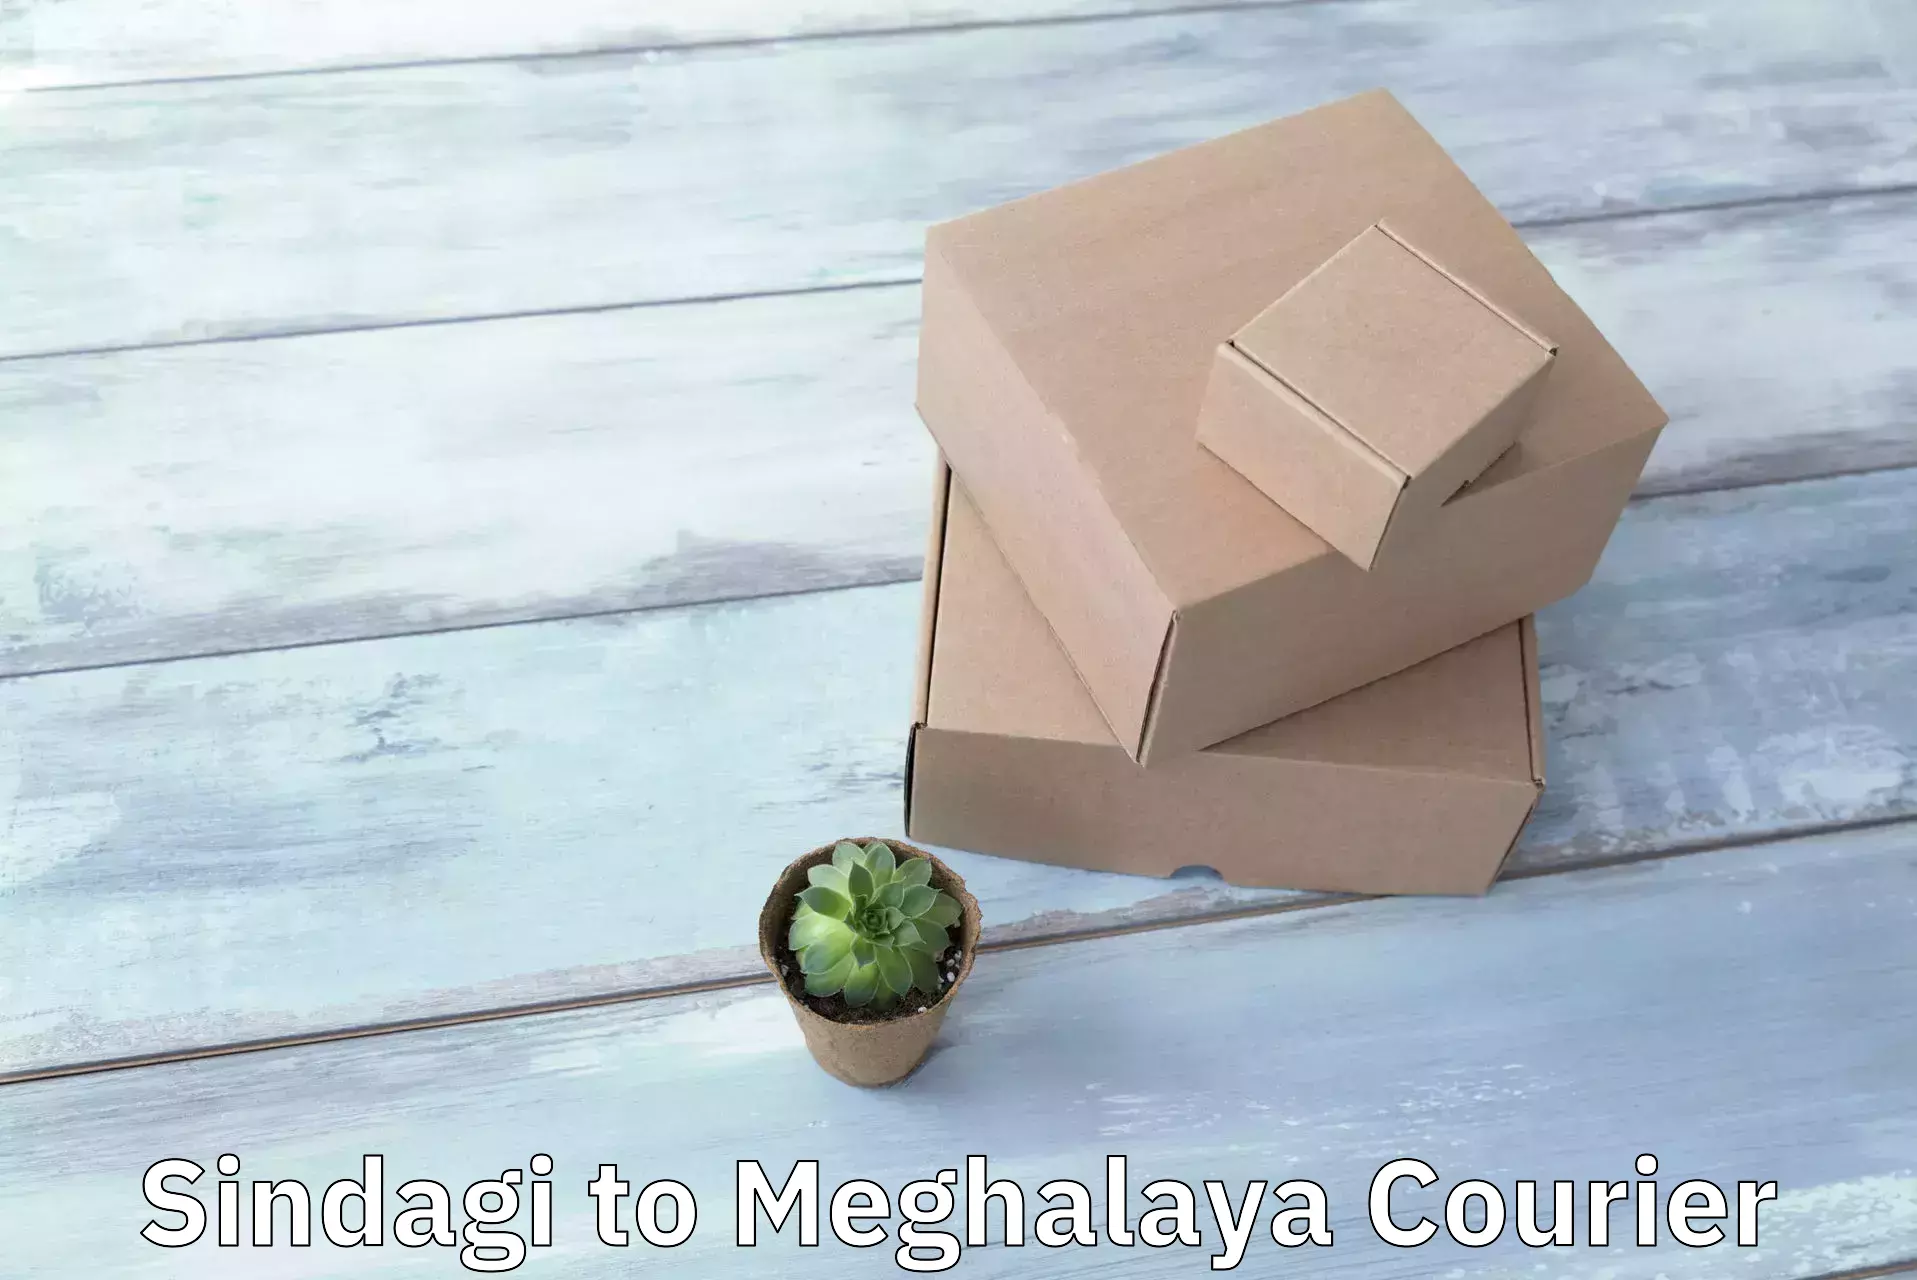 Courier membership Sindagi to Meghalaya